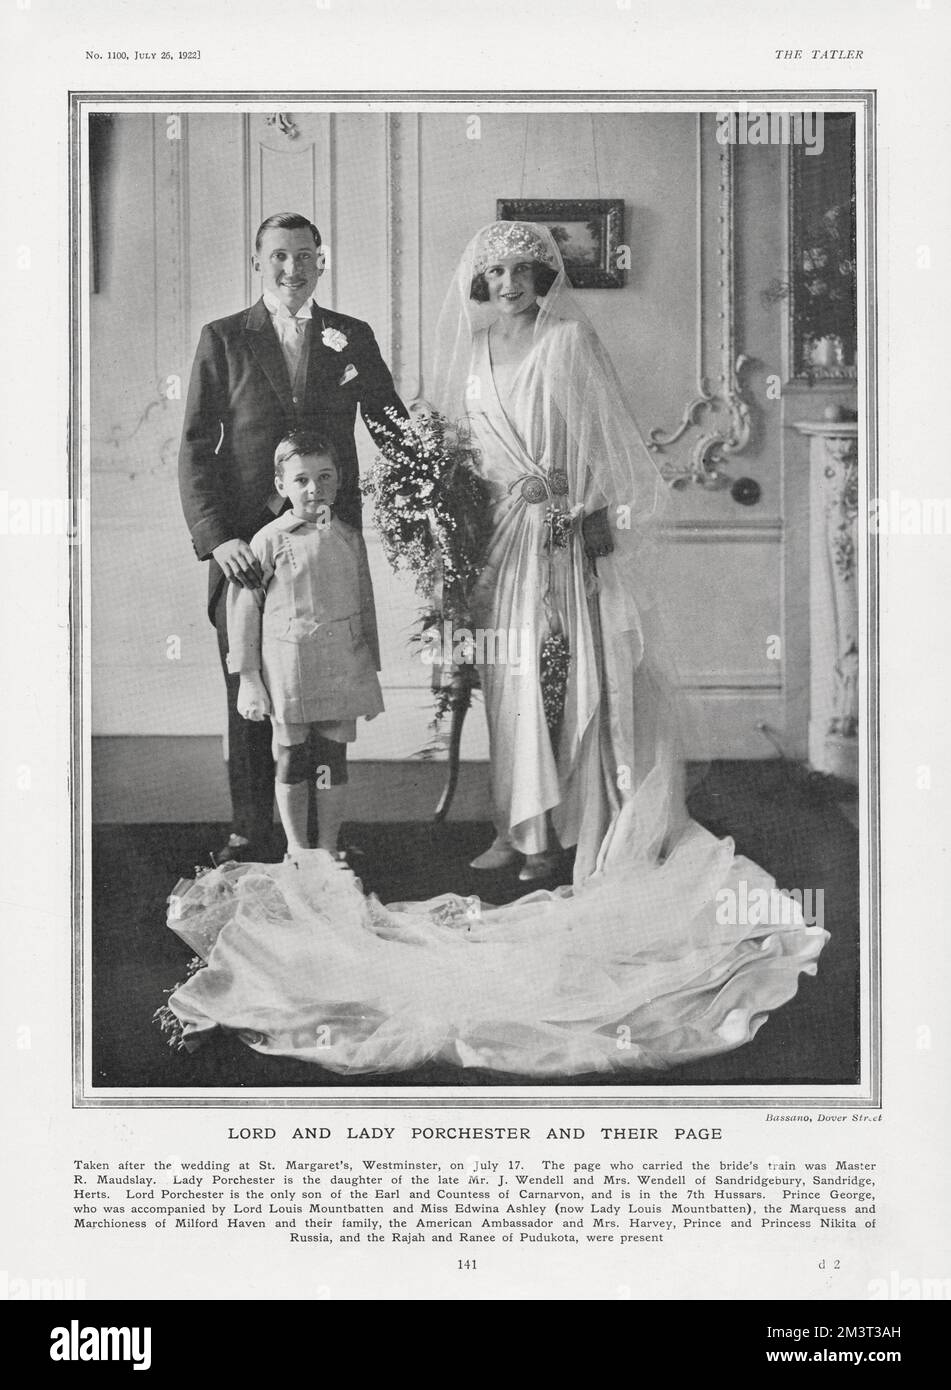 Henry Herbert, Lord Porchester, später 6. Earl of Carnarvon und seine (erste) Frau Catherine Wendell, mit ihrer Seite Master R. Maudsley an ihrem Hochzeitstag, dem 17. Juli 1922. Stockfoto